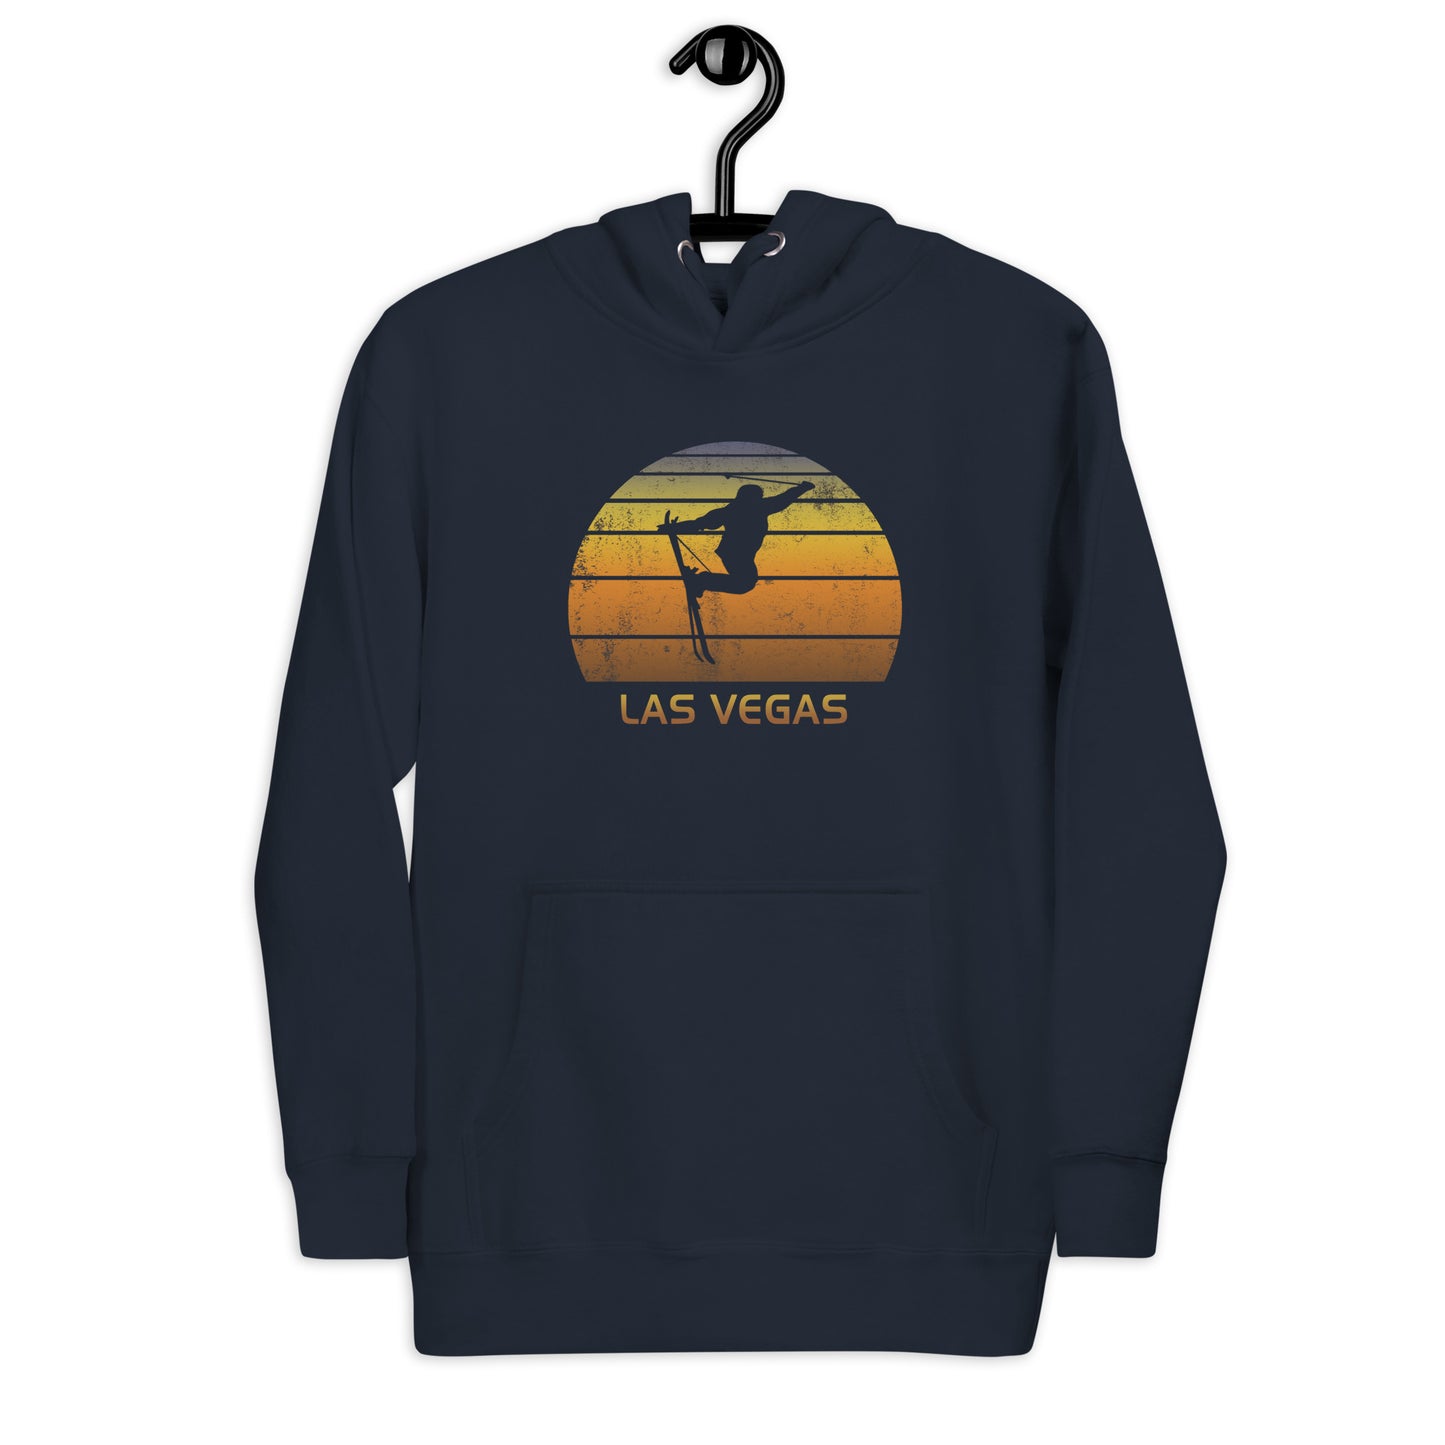 Funny Ski Las Vegas Skiing Joke Unisex Hoodie Top Sweatshirt